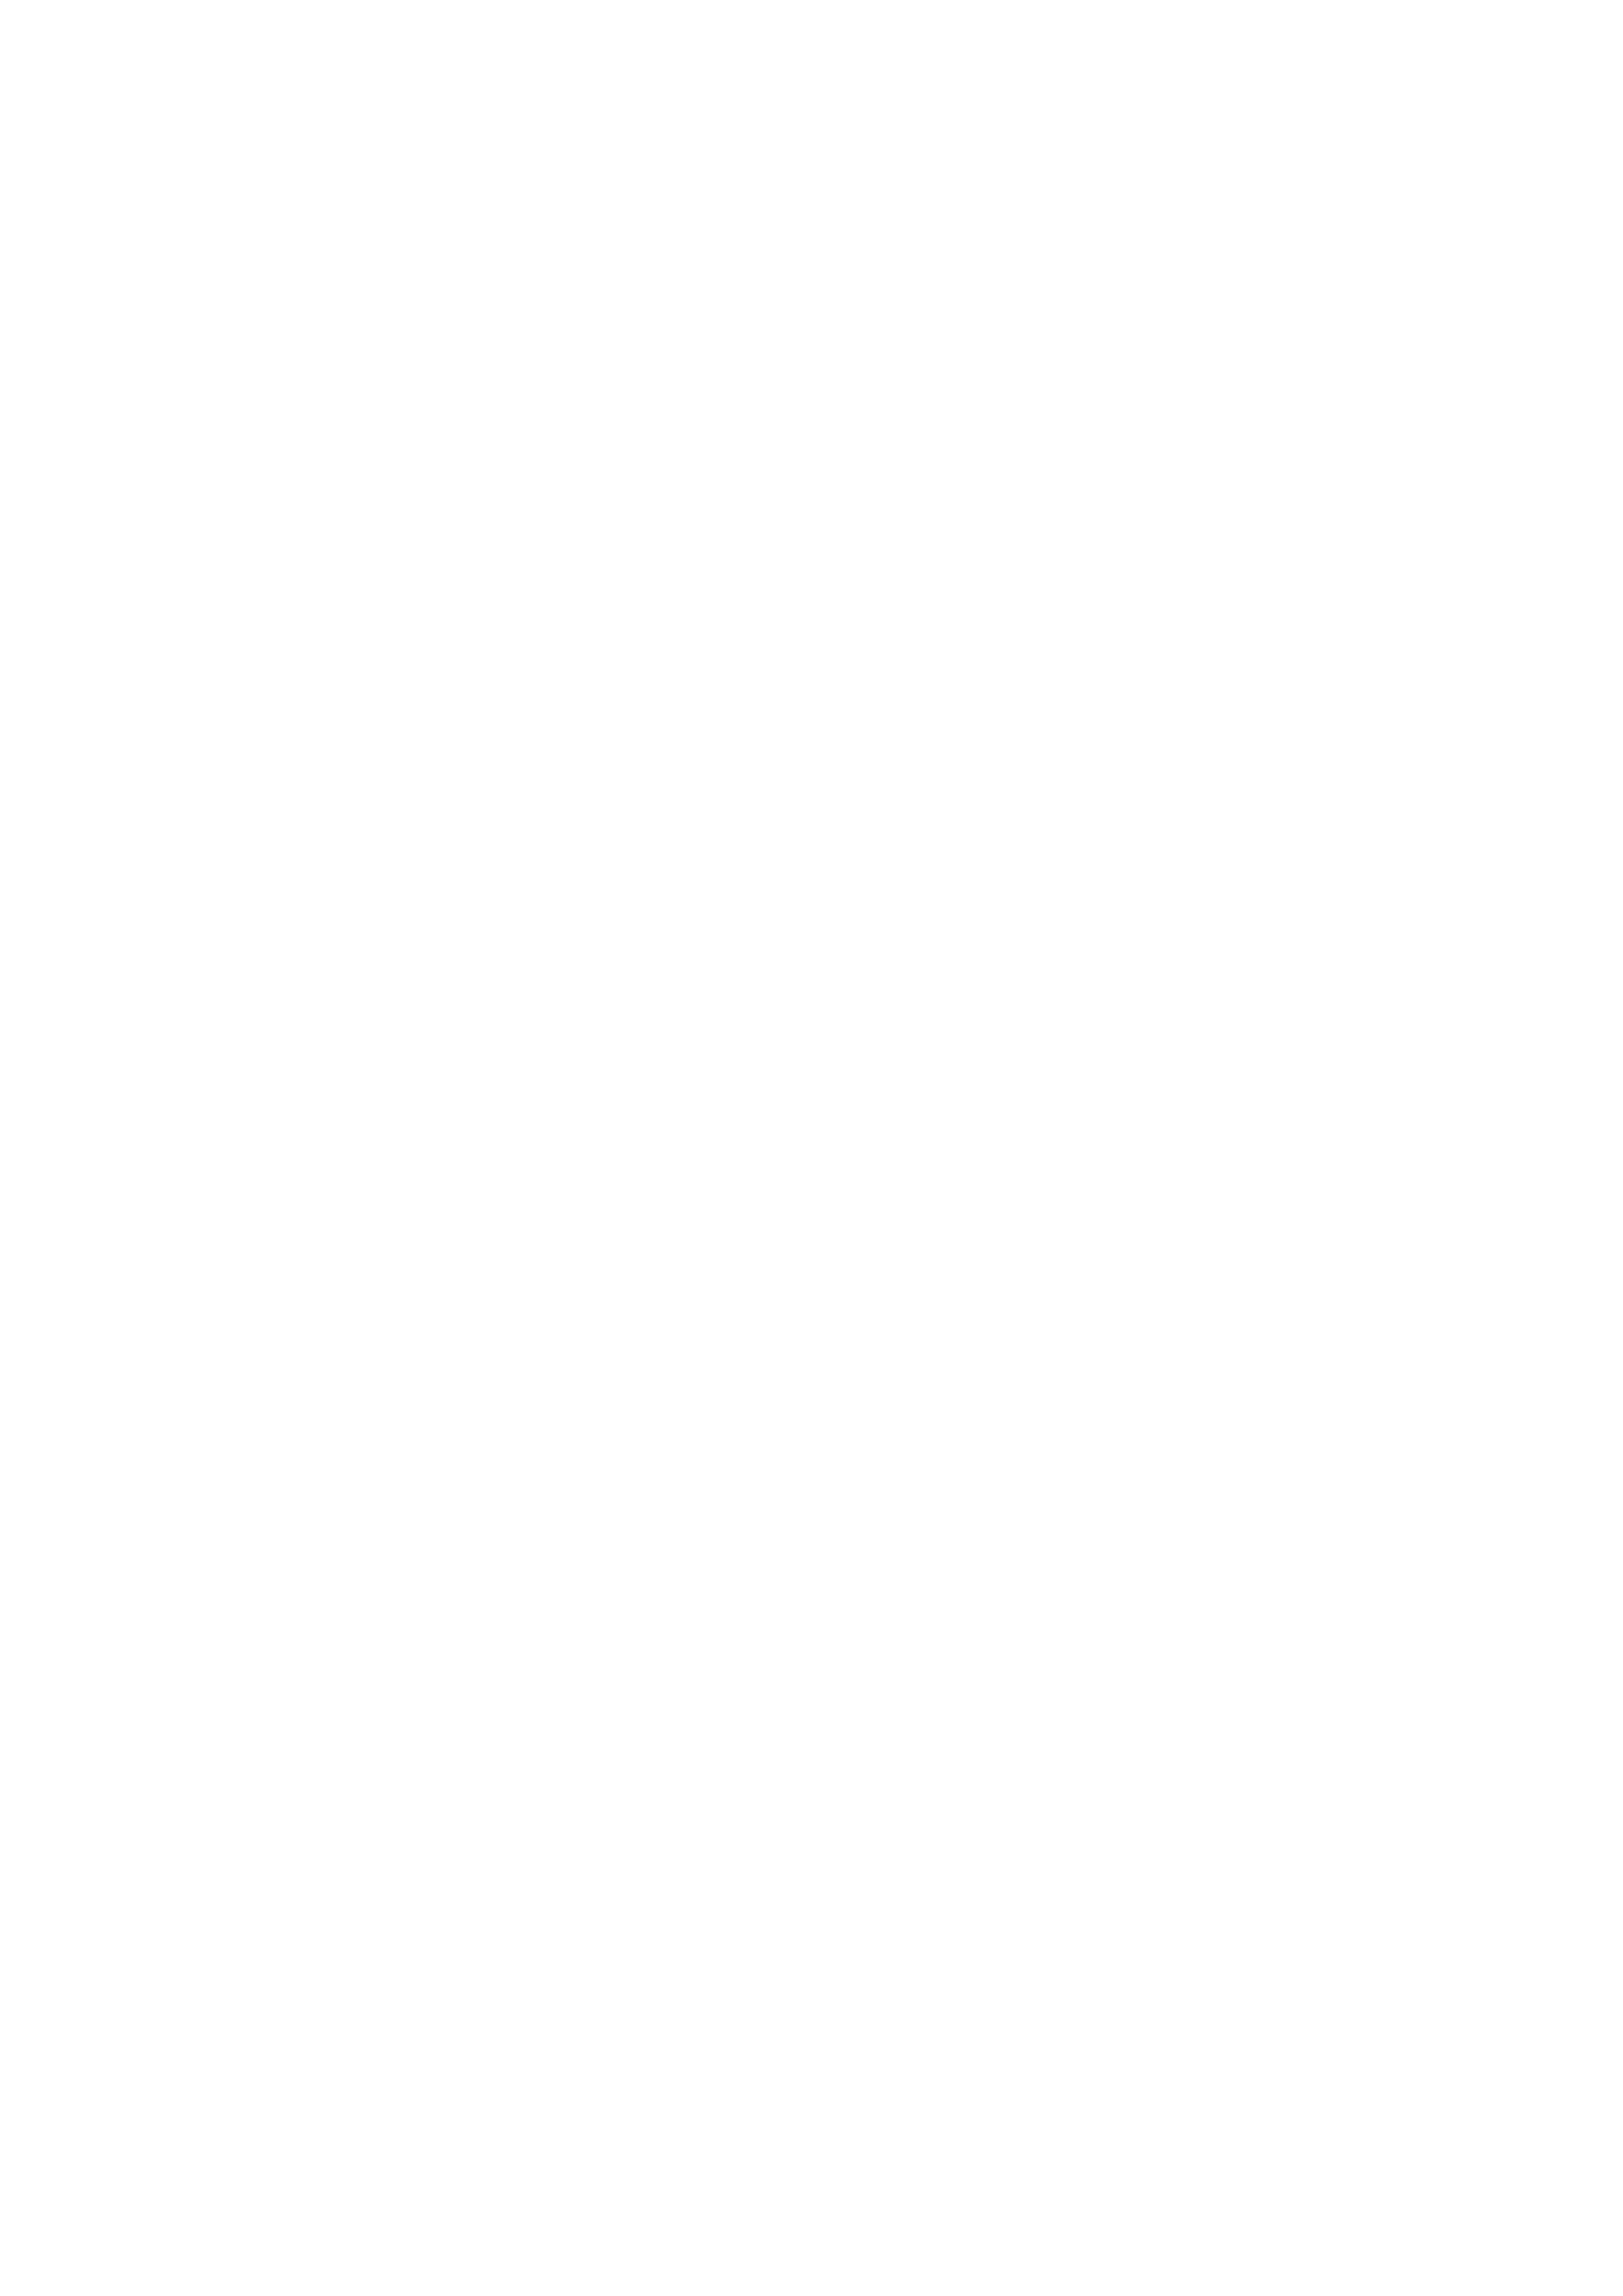 Architekten Goumans